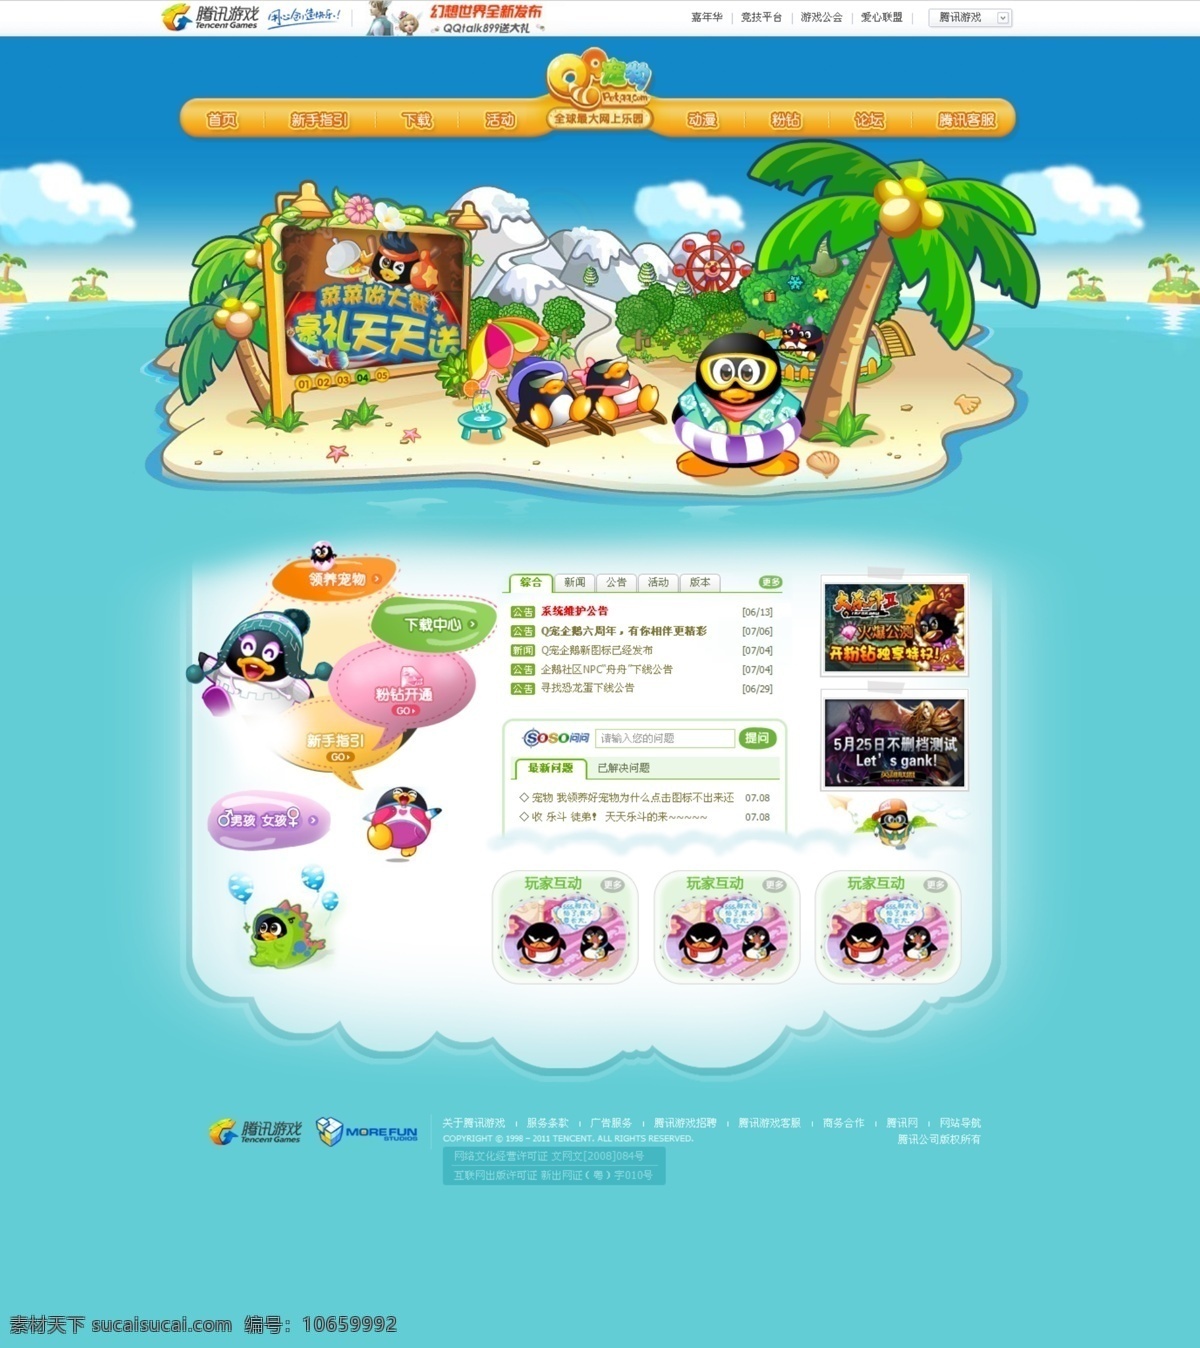 游戏 官 网 qq企鹅 卡通 企鹅 沙滩 腾讯 夏日 官网 原创设计 原创网页设计